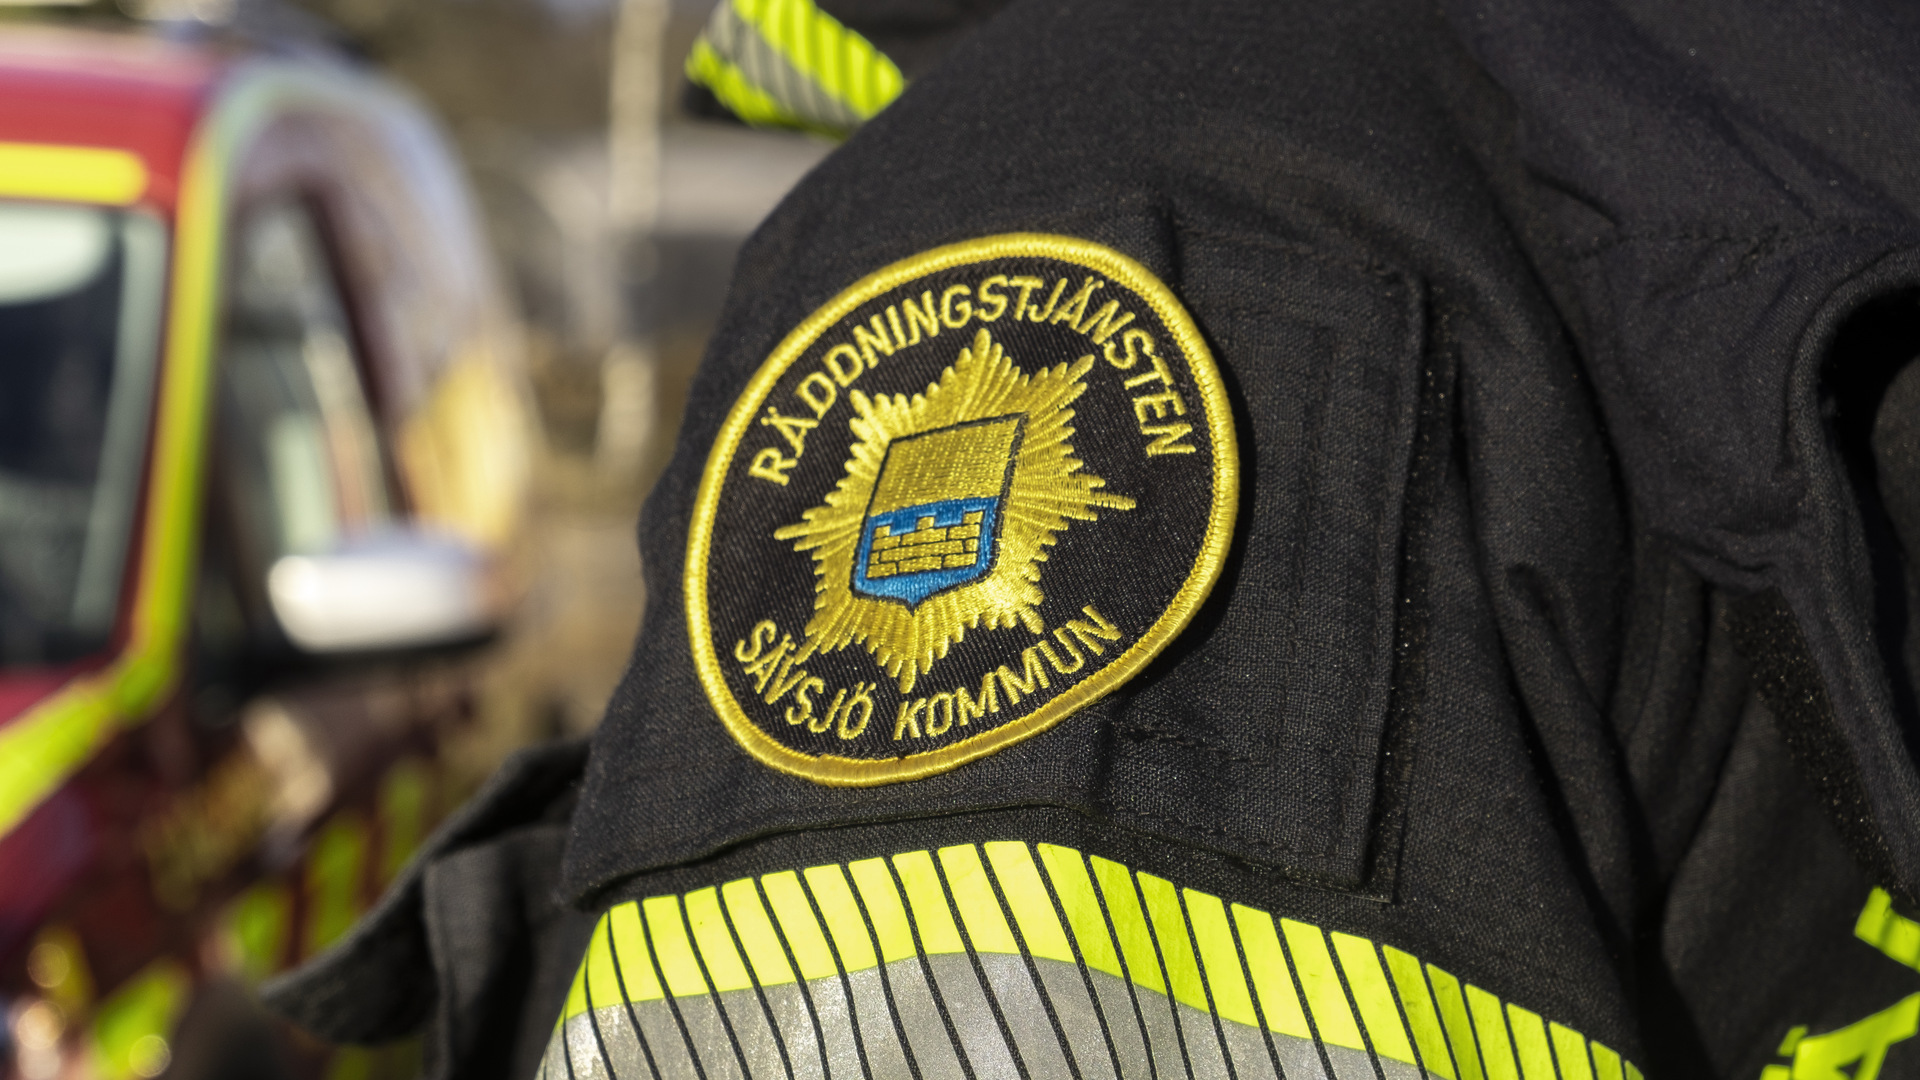 Axeln på en brandman som visar emblem/logotyp för räddningstjänsten i Sävsjö kommun i närbild